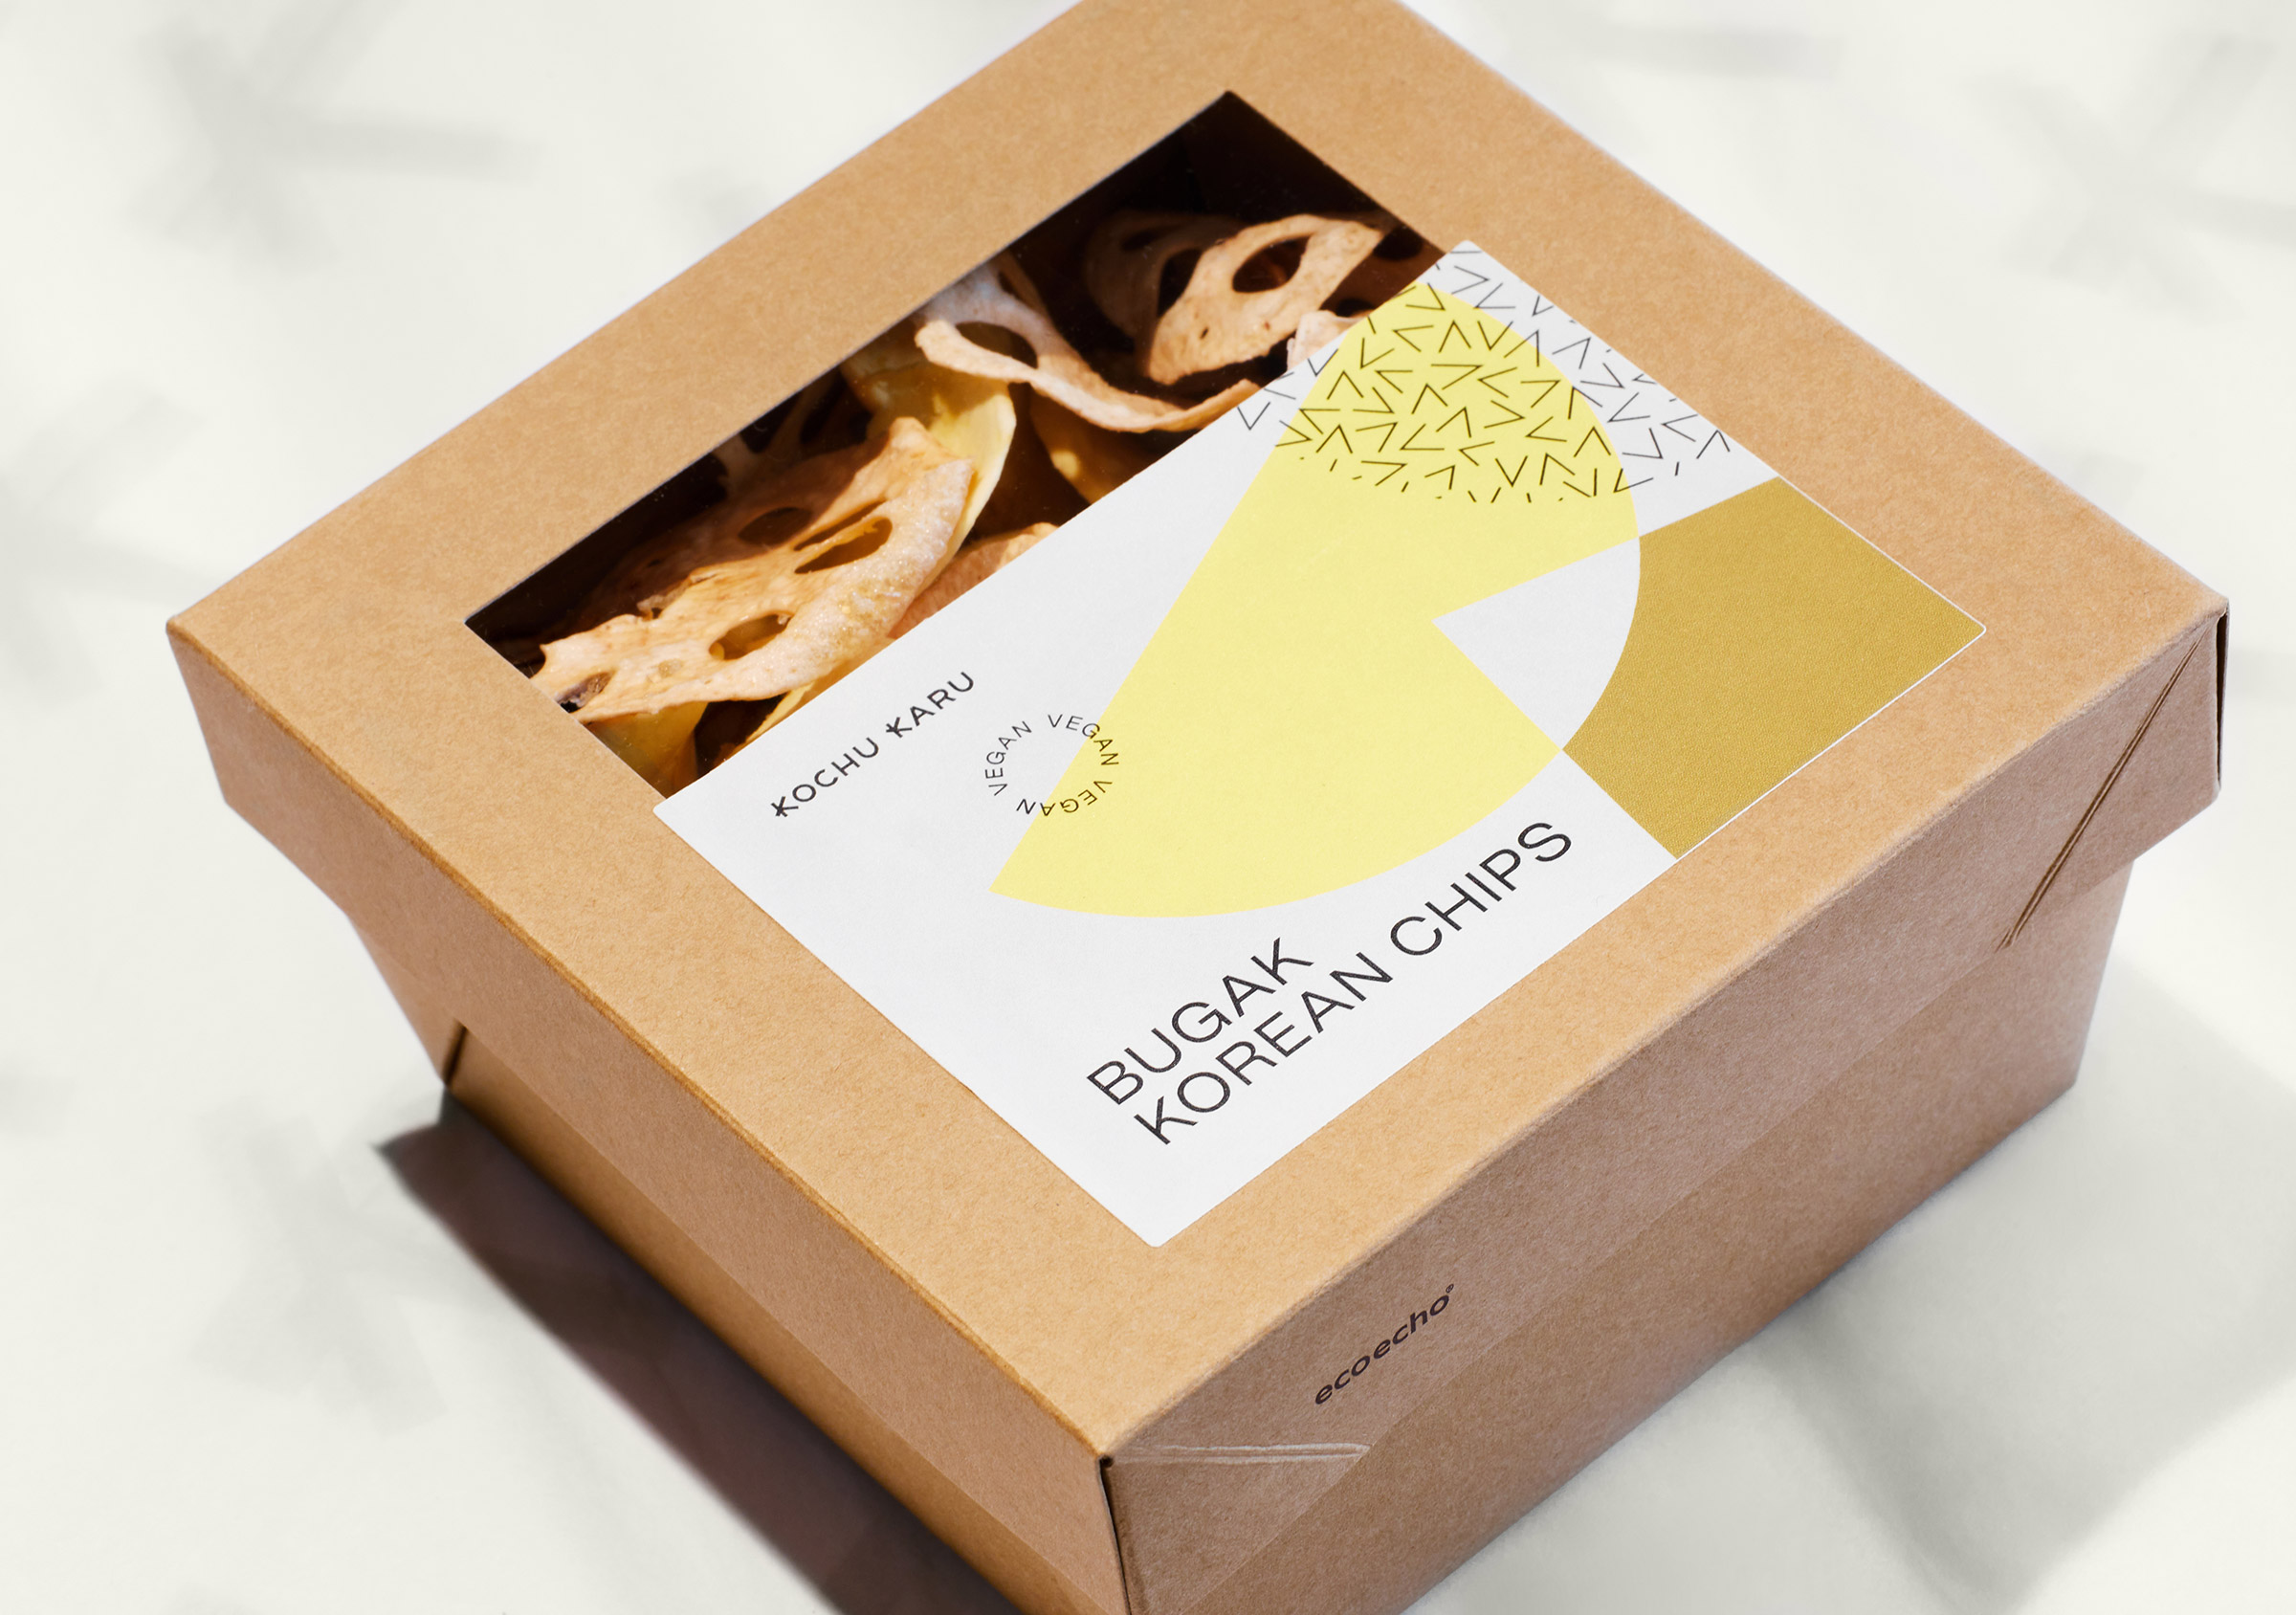 Kochu Karu Deli Korean Chips, Bugak, Produktbox aus braunem Karton mit Sichtfenster und illustrativ gestaltetem Etikett